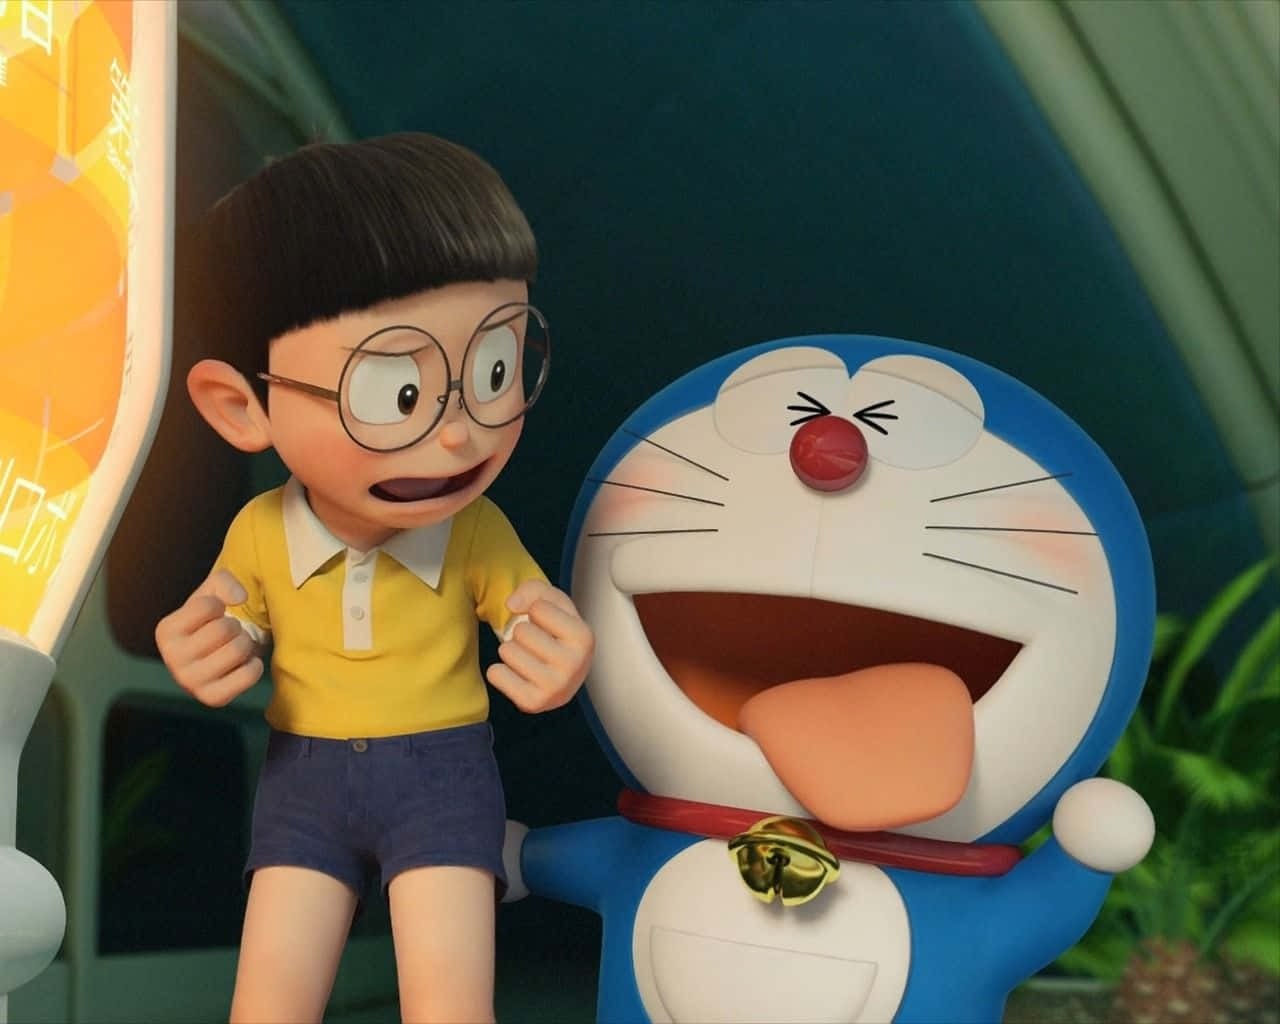 Happy moments with Doraemon!